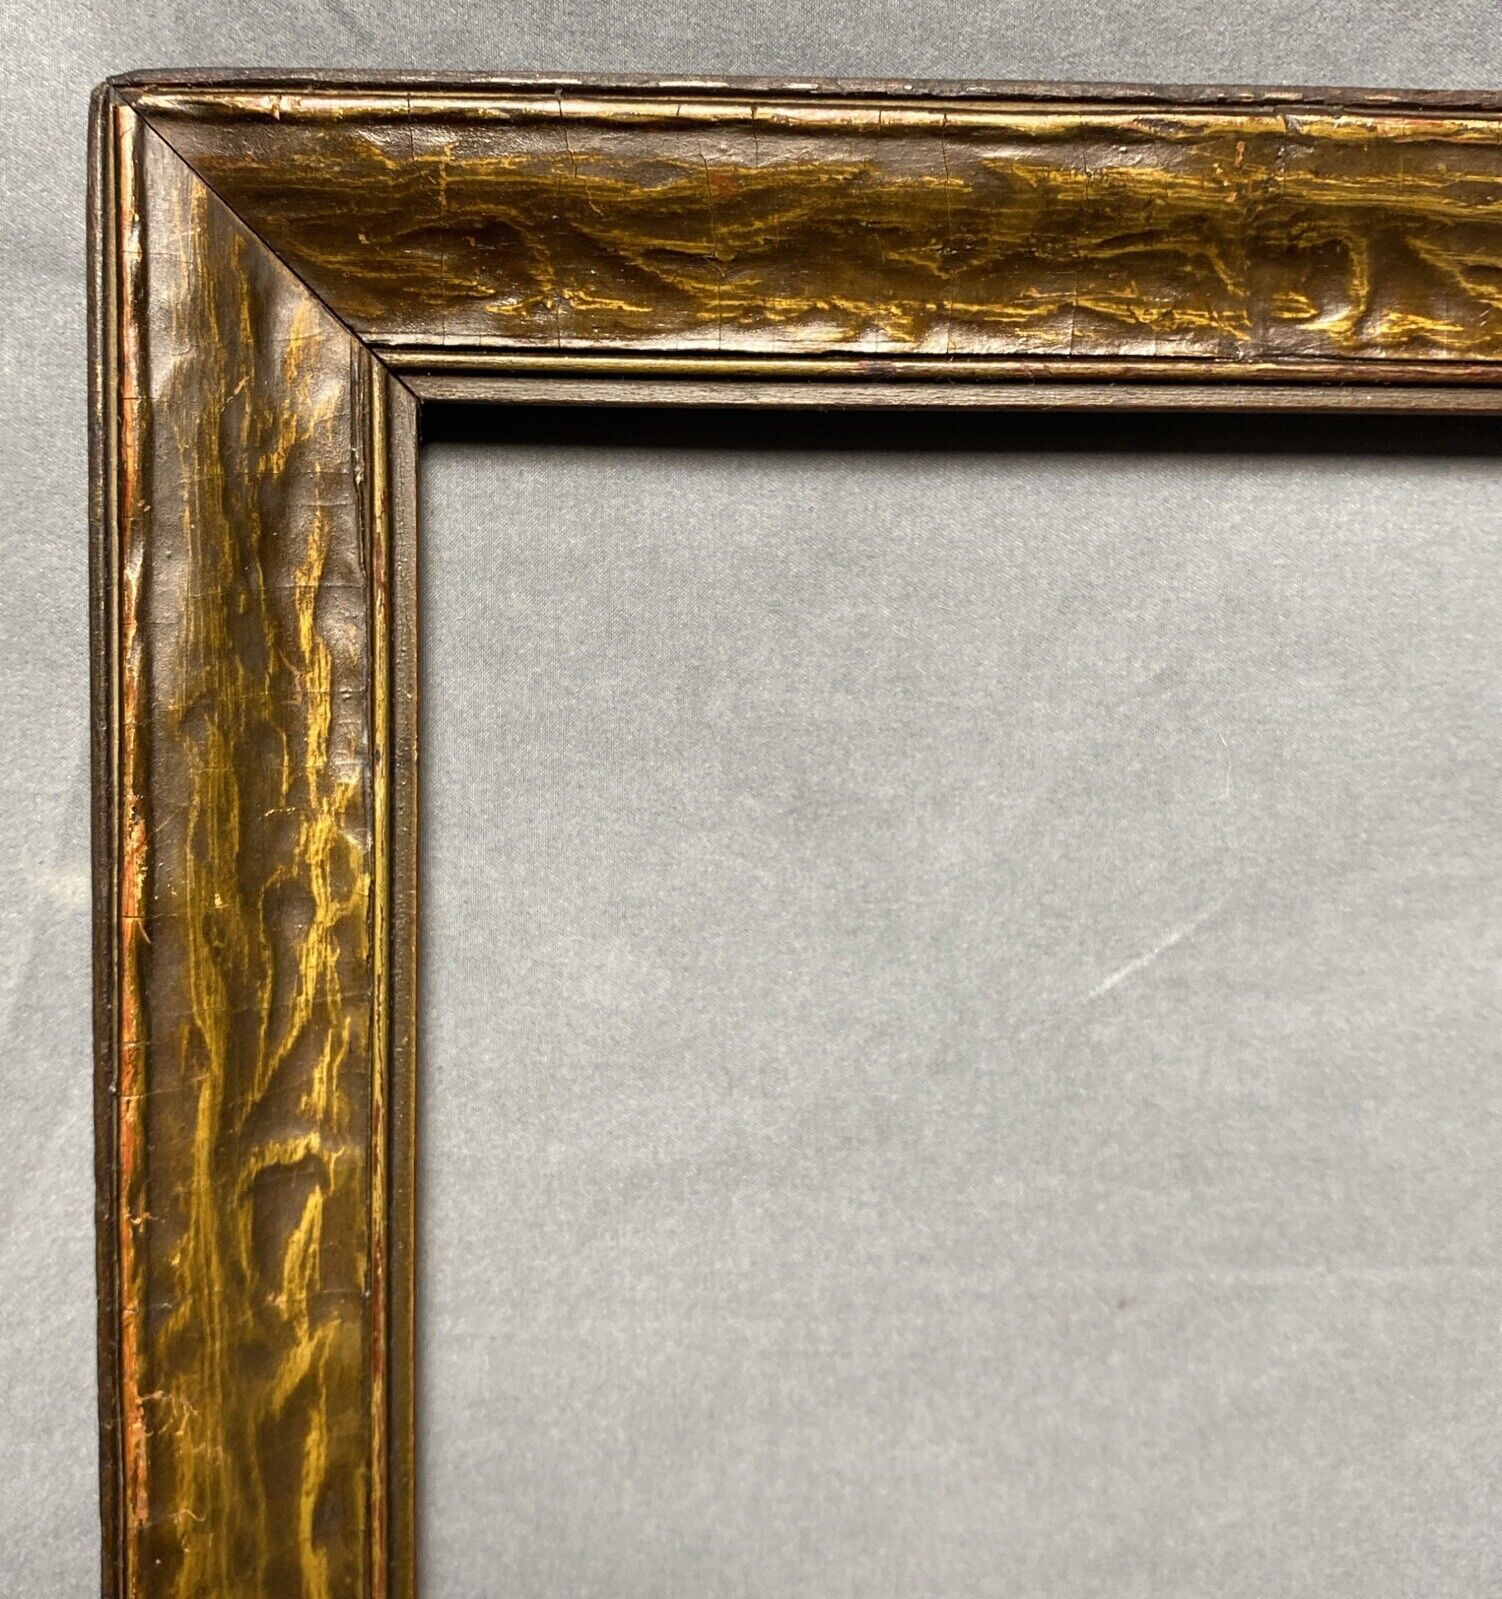 Antique Victorian Carved Wood Frame 24.5